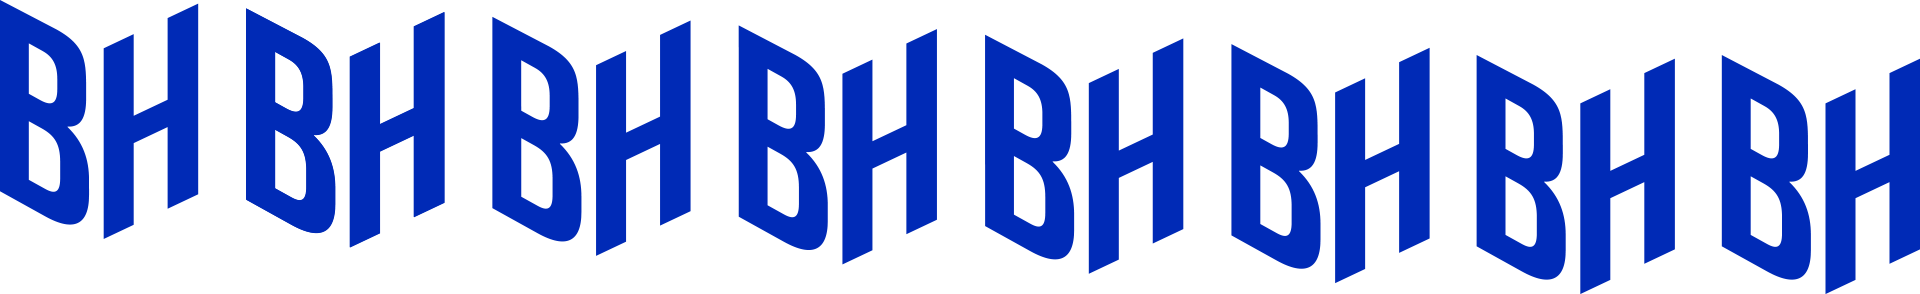 BH bleu